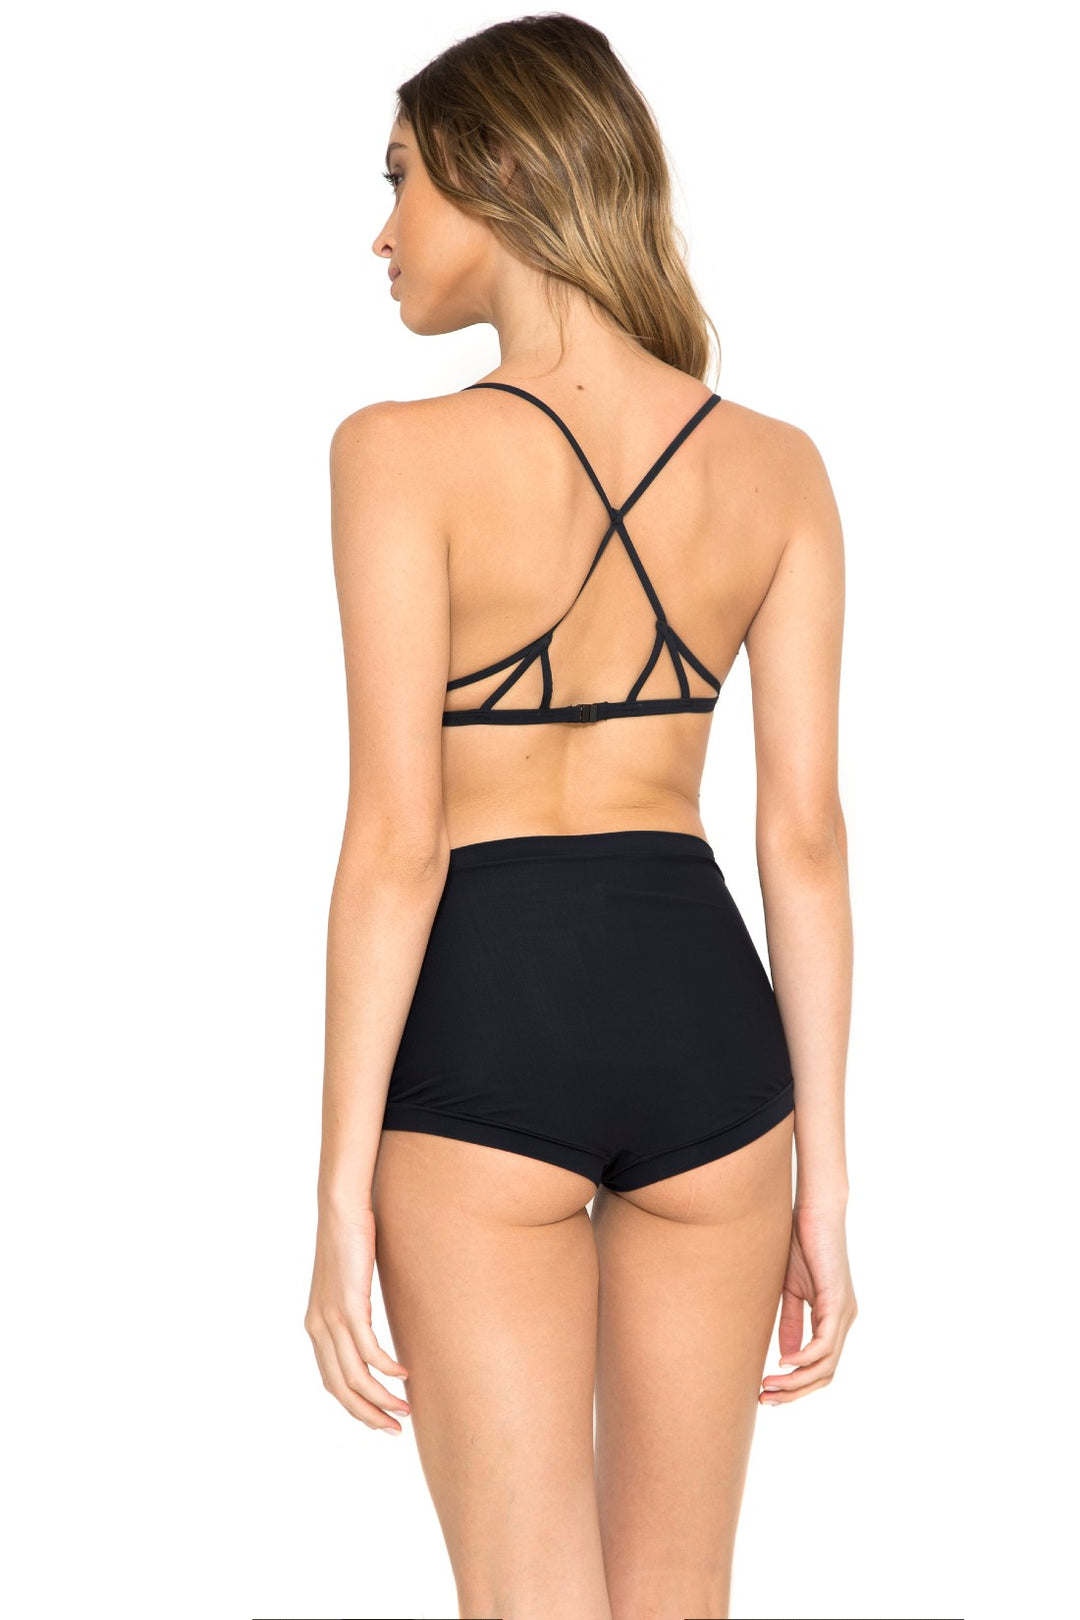 Lenny Niemeyer swimwear Black triangle bikini top